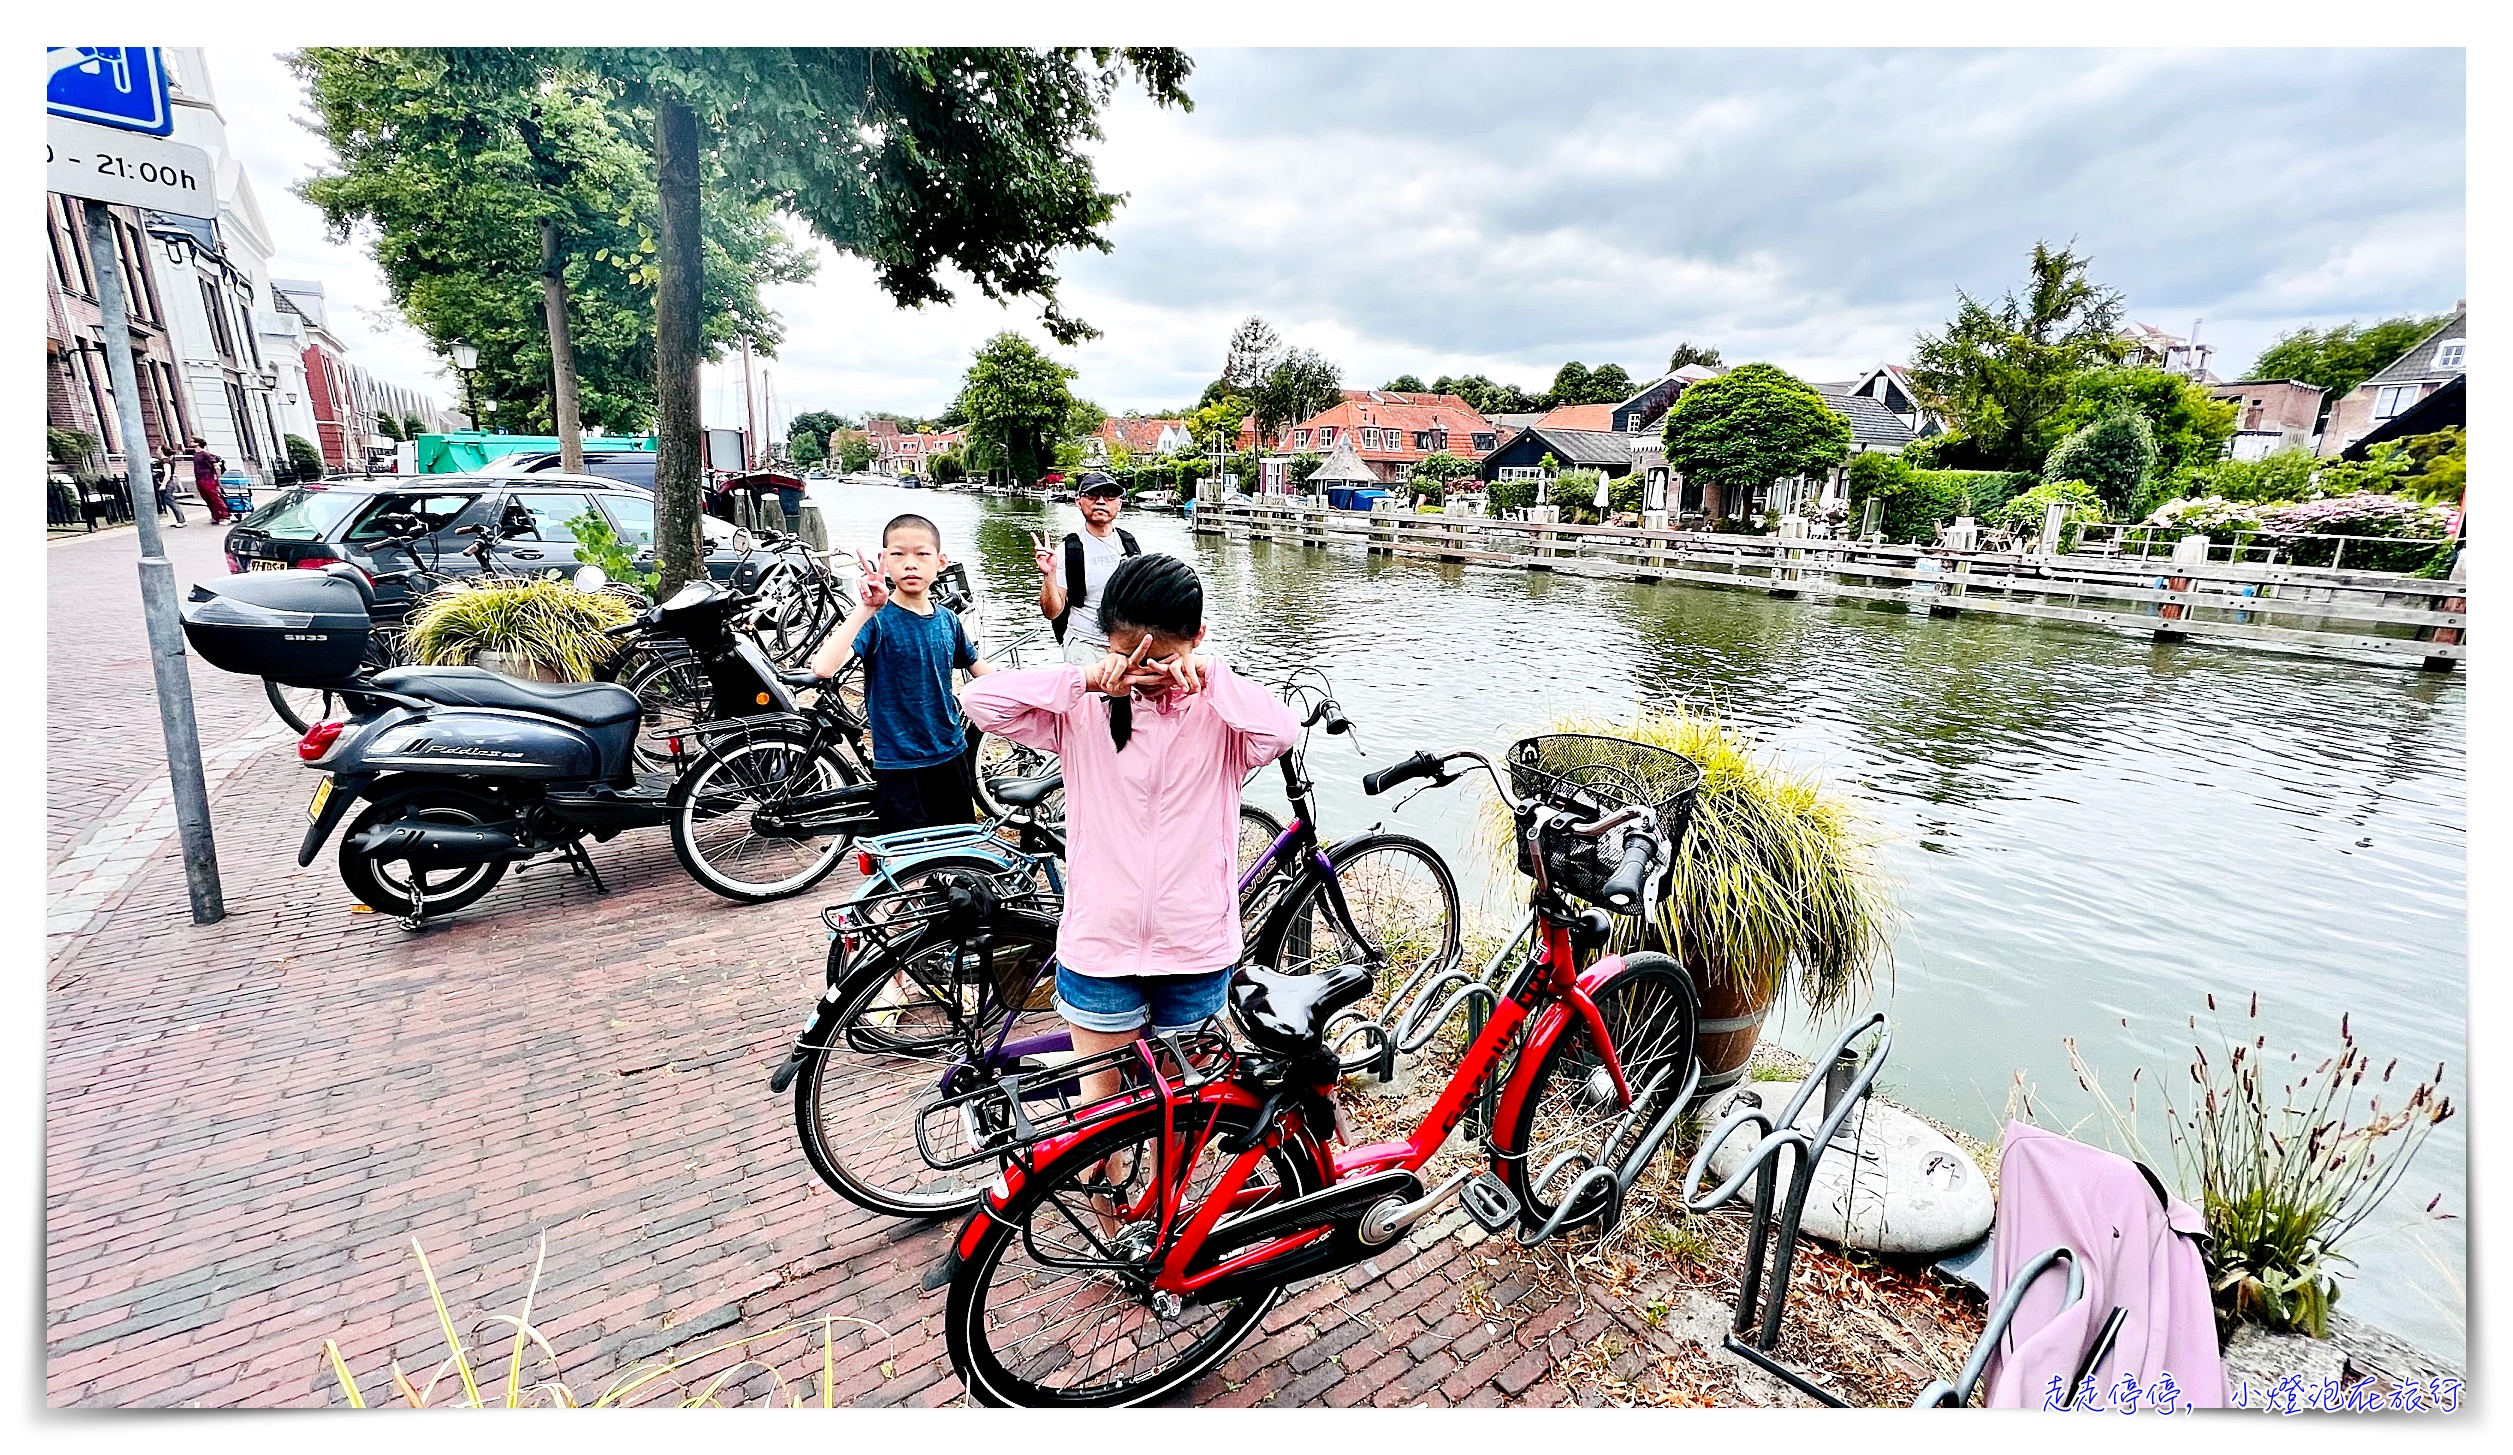 阿姆斯特丹租腳踏車｜bike rental amsterdam，Quality Bike Rent Amsterdam單車租借，單車小旅行